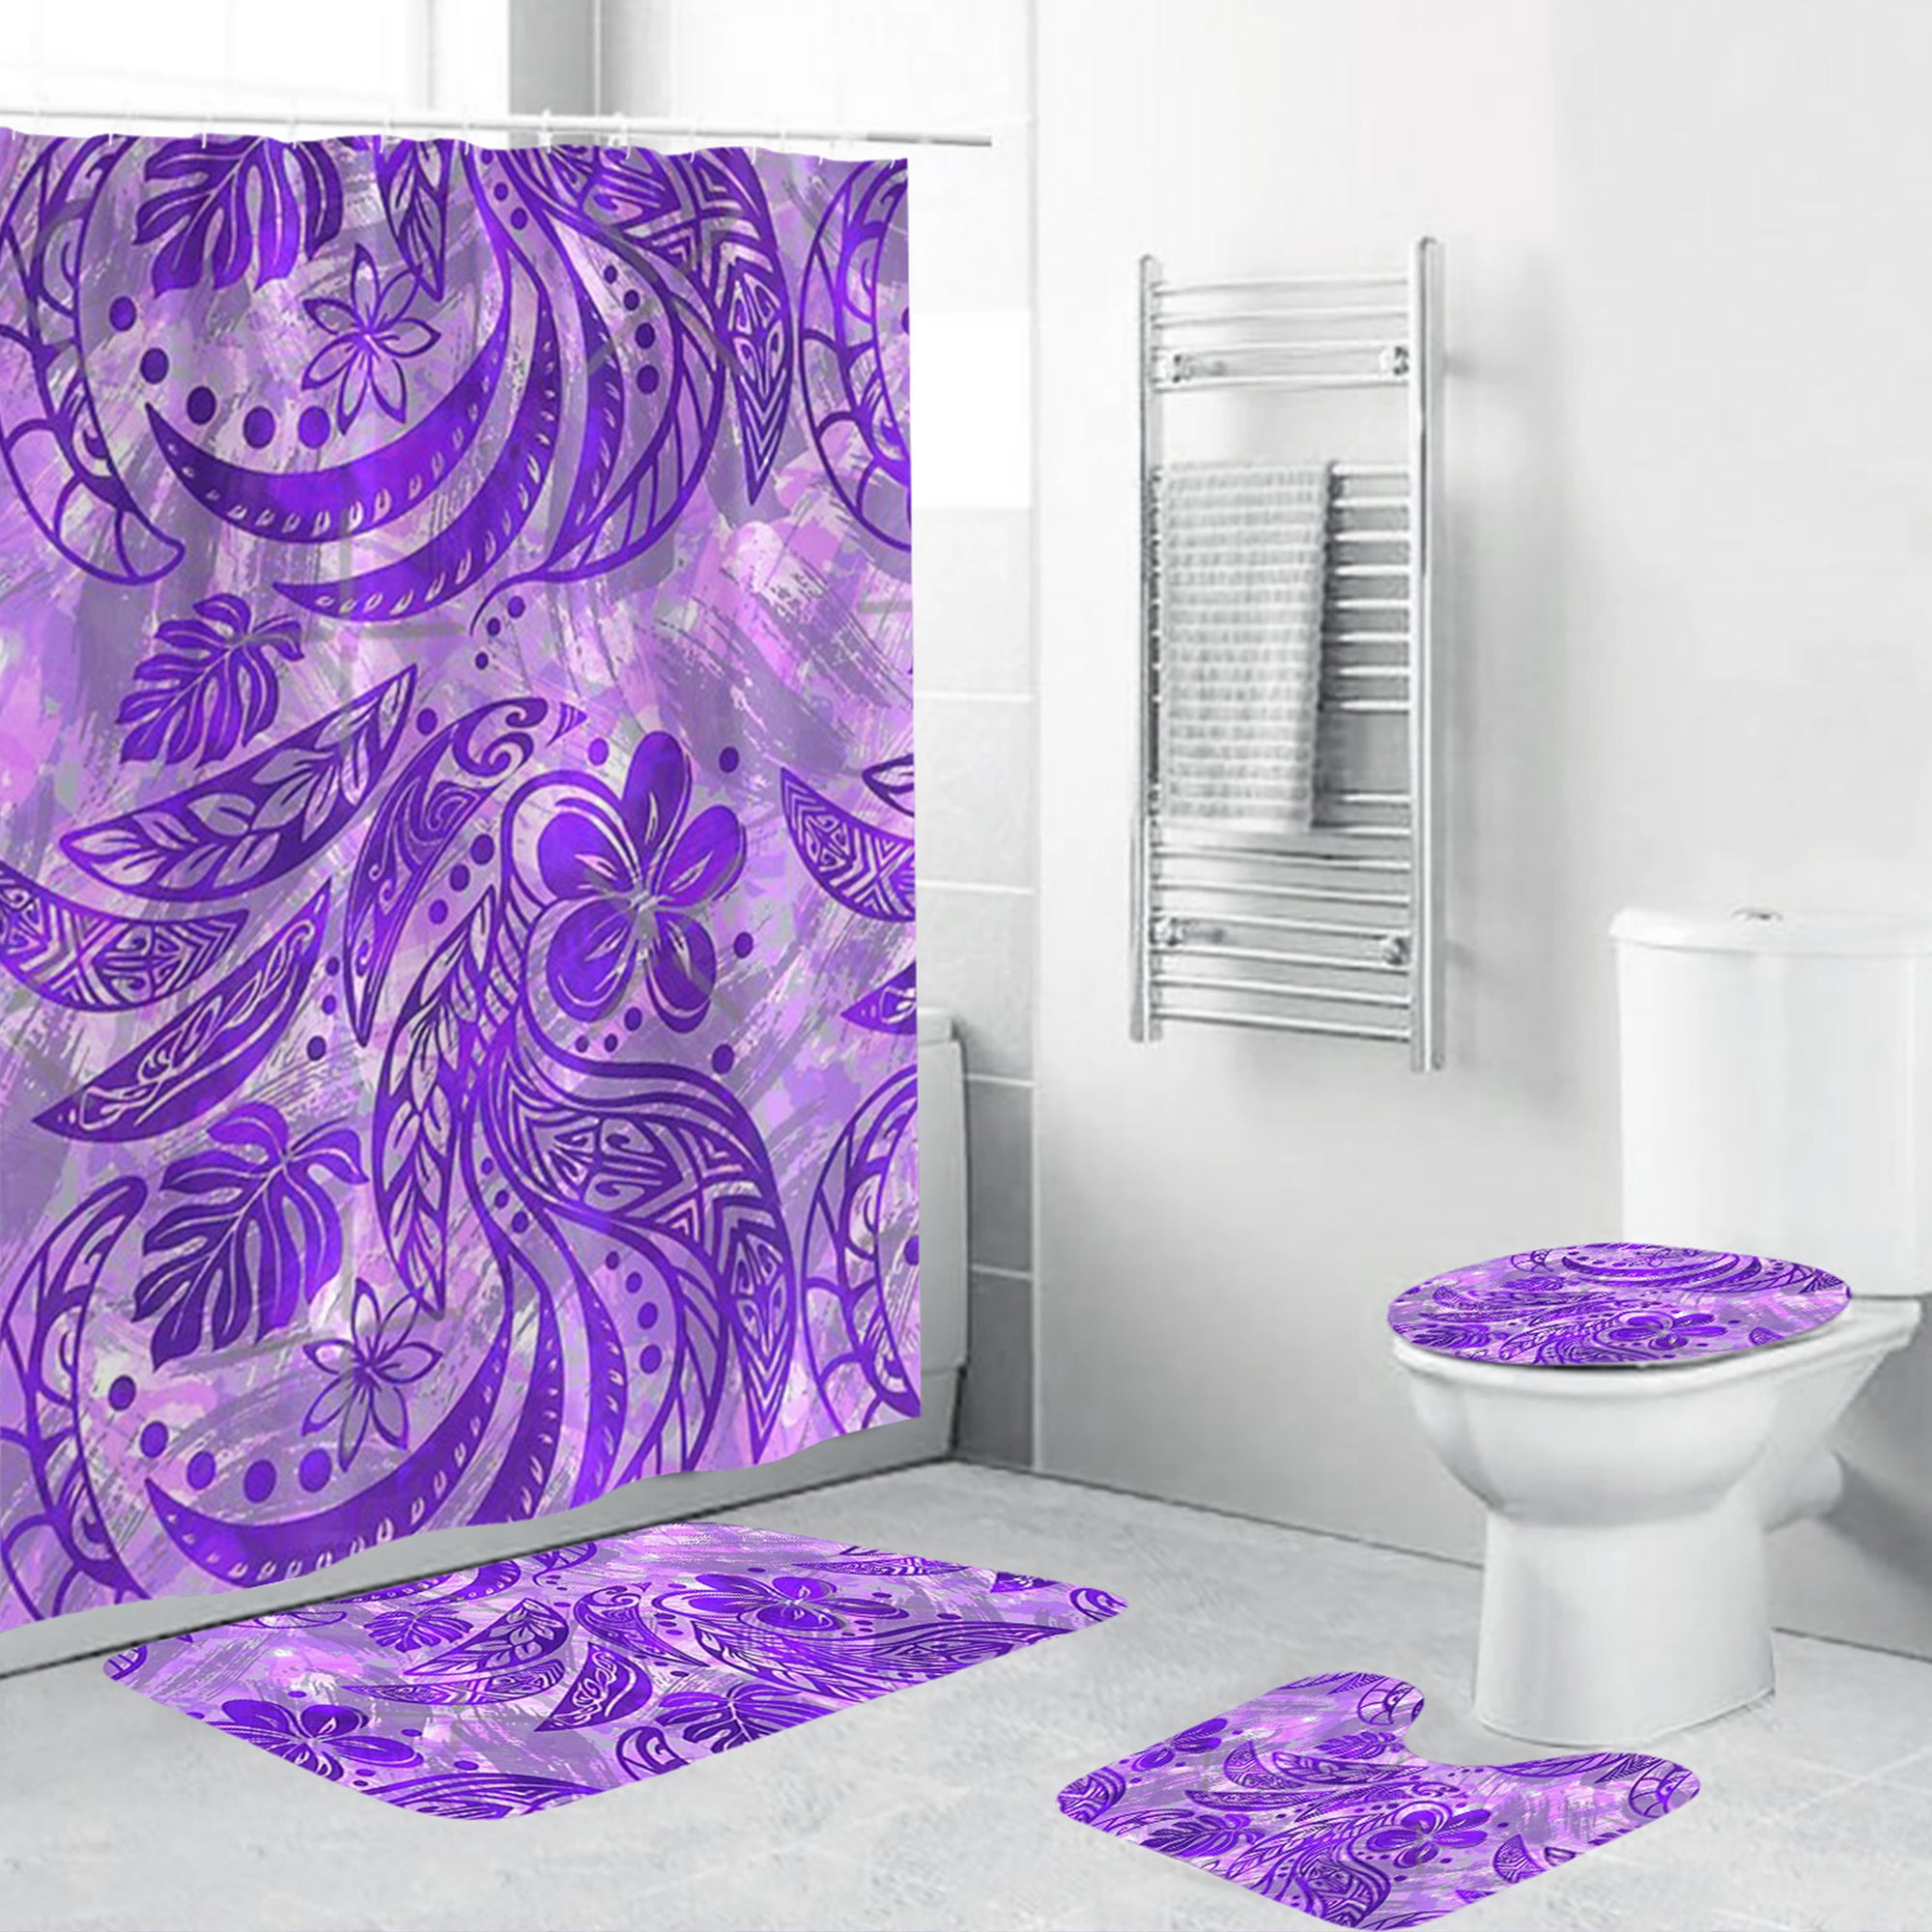 Polynesian Home Set - Polynesian Painted Purple Bathroom Set LT10 Purple - Polynesian Pride